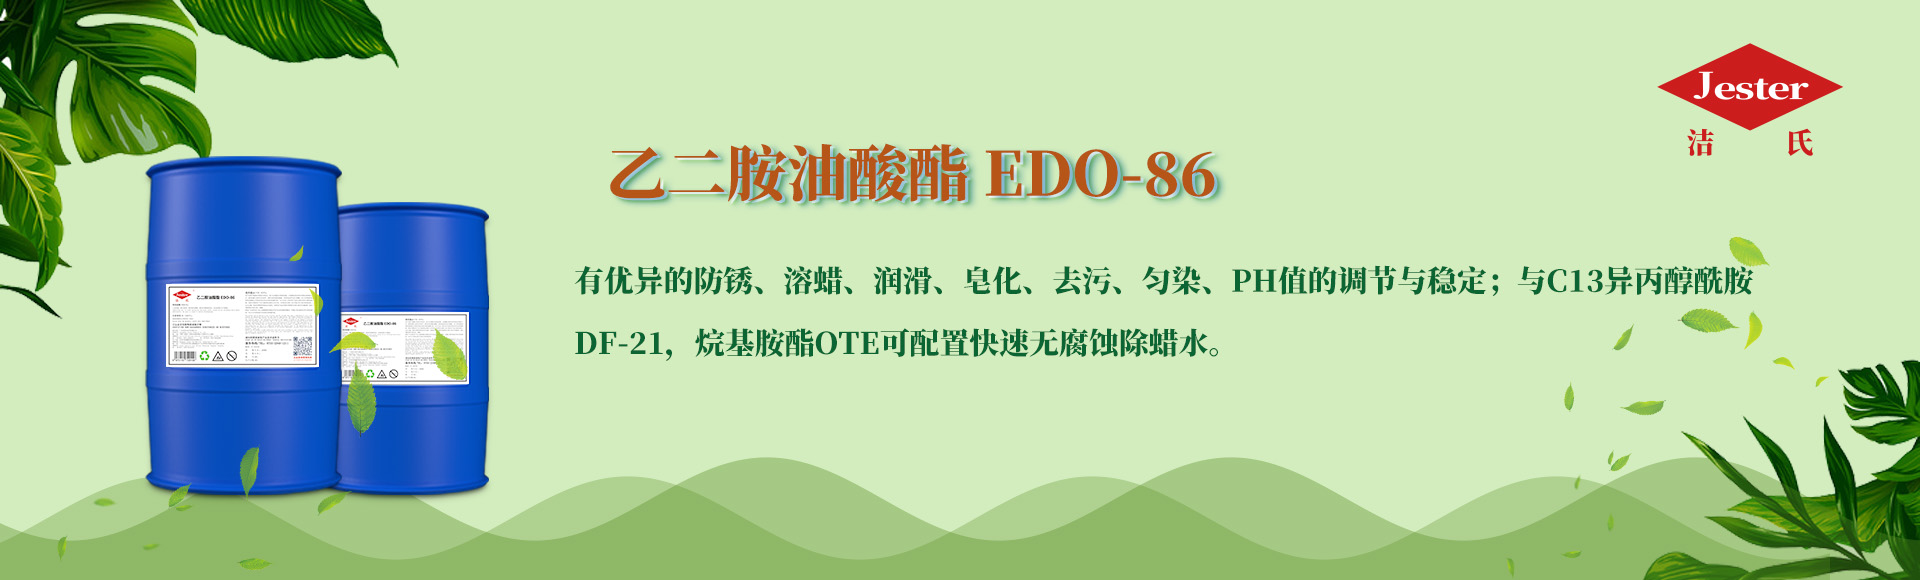 二胺油酸酯EDO-86